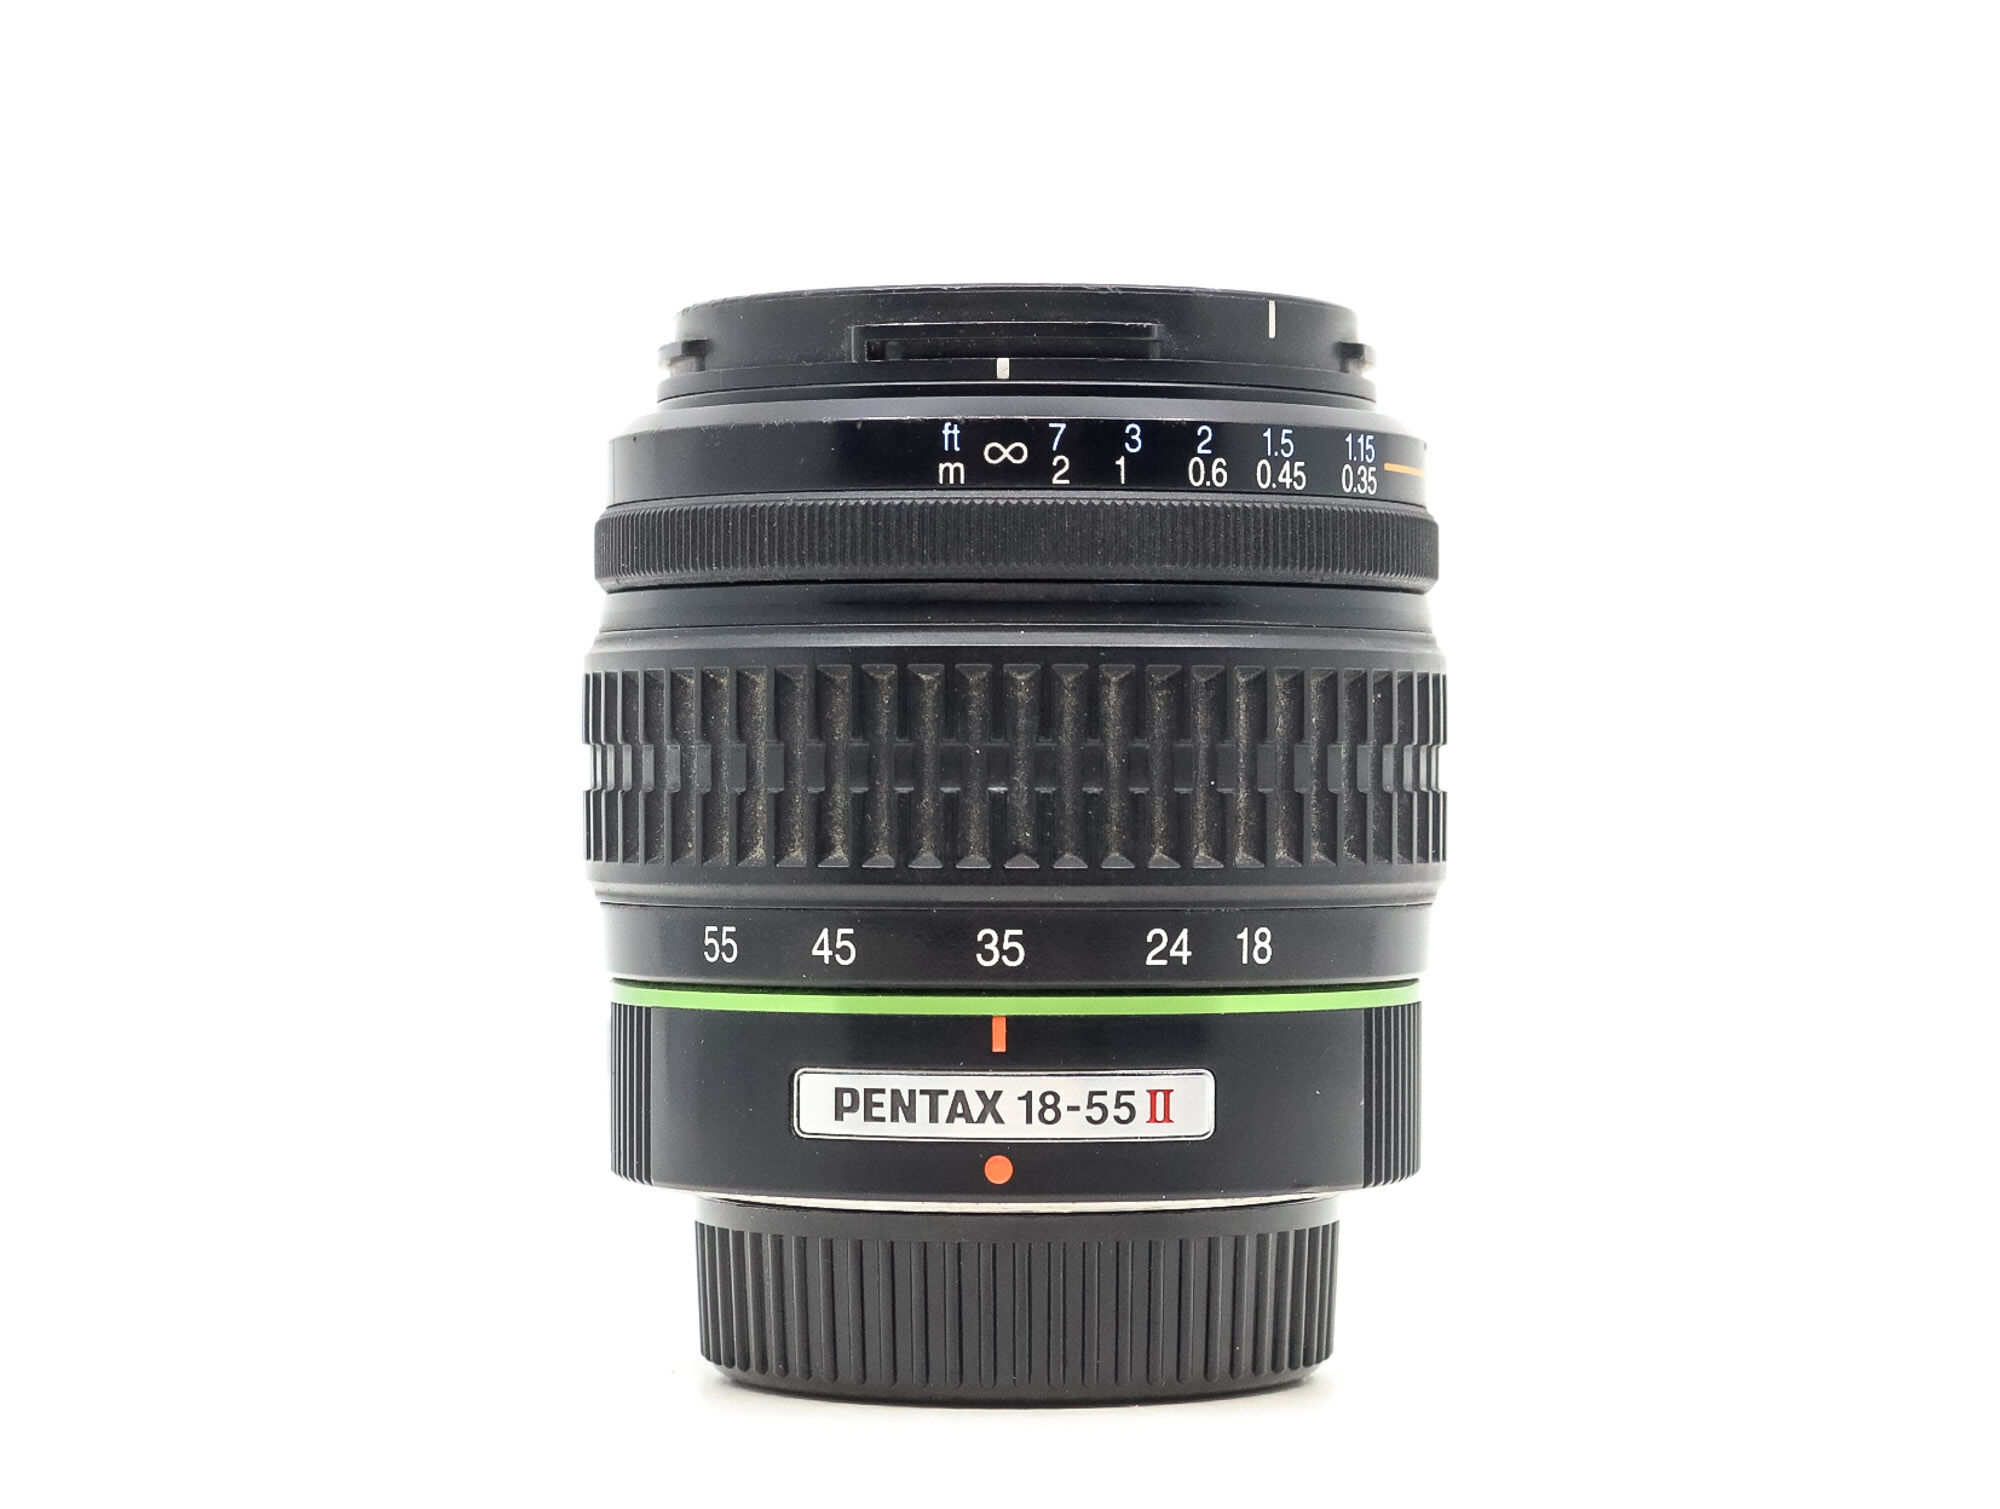 Pentax SMC -DA 18-55mm f/3.5-5.6 AL II (Condition: Well Used)